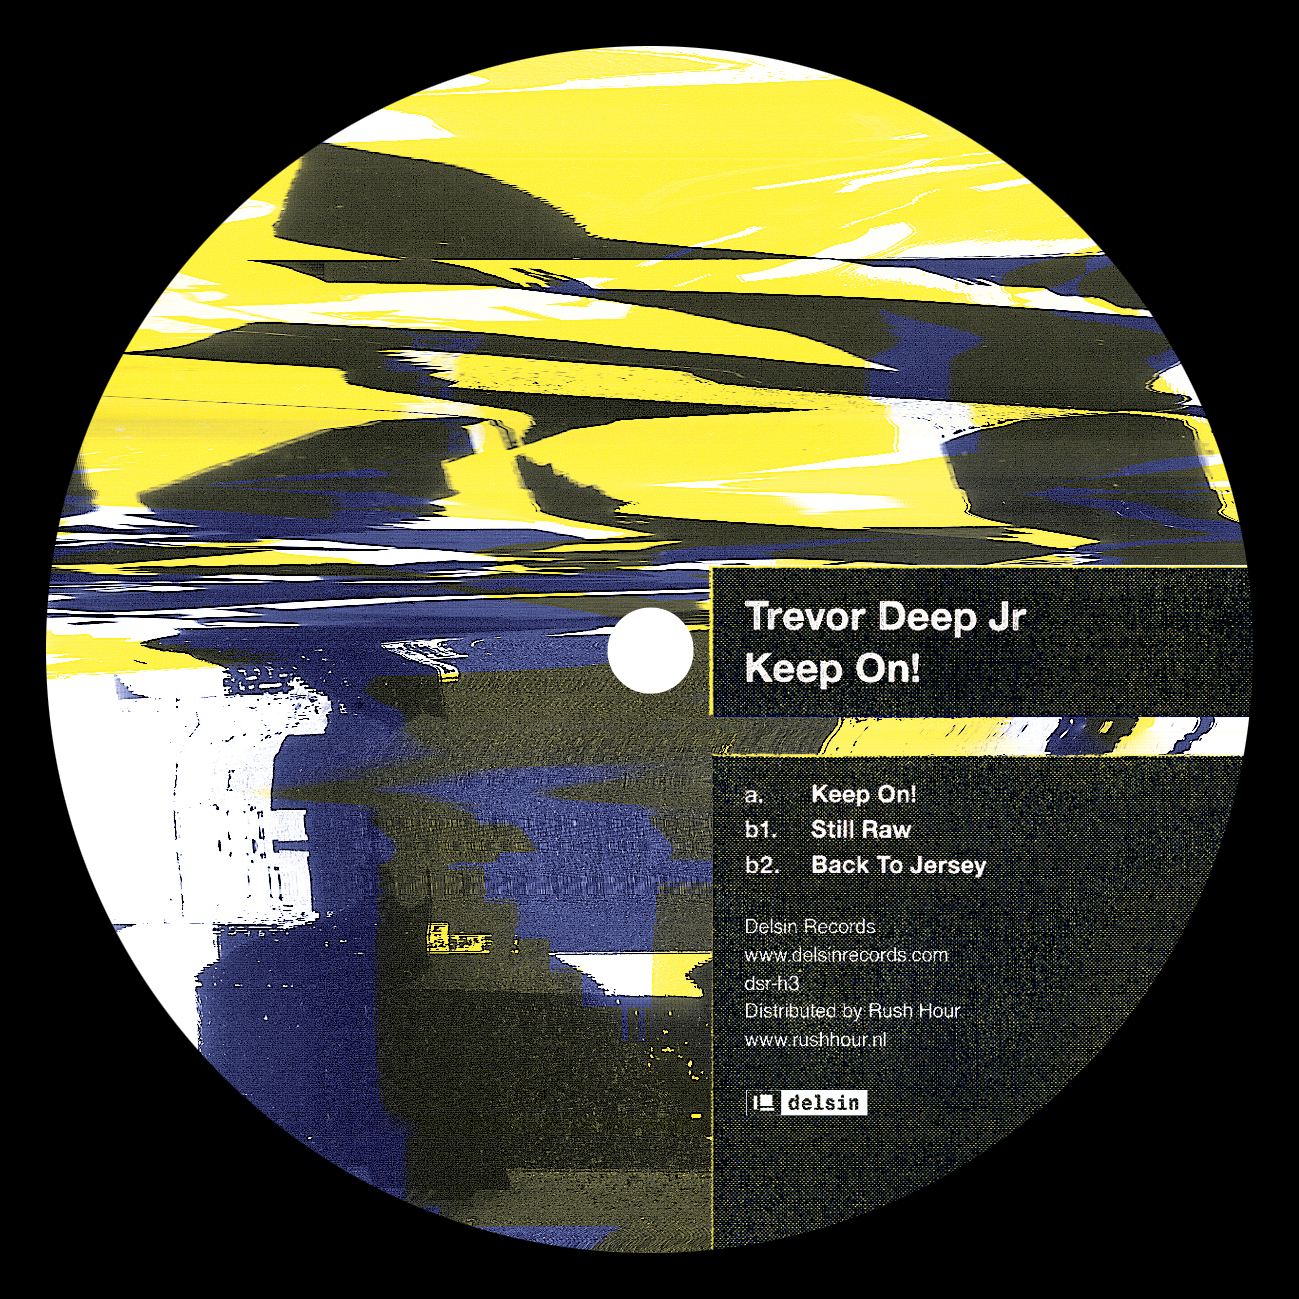 image cover: Trevor Deep Jr - Keep On (Dsr-h3)